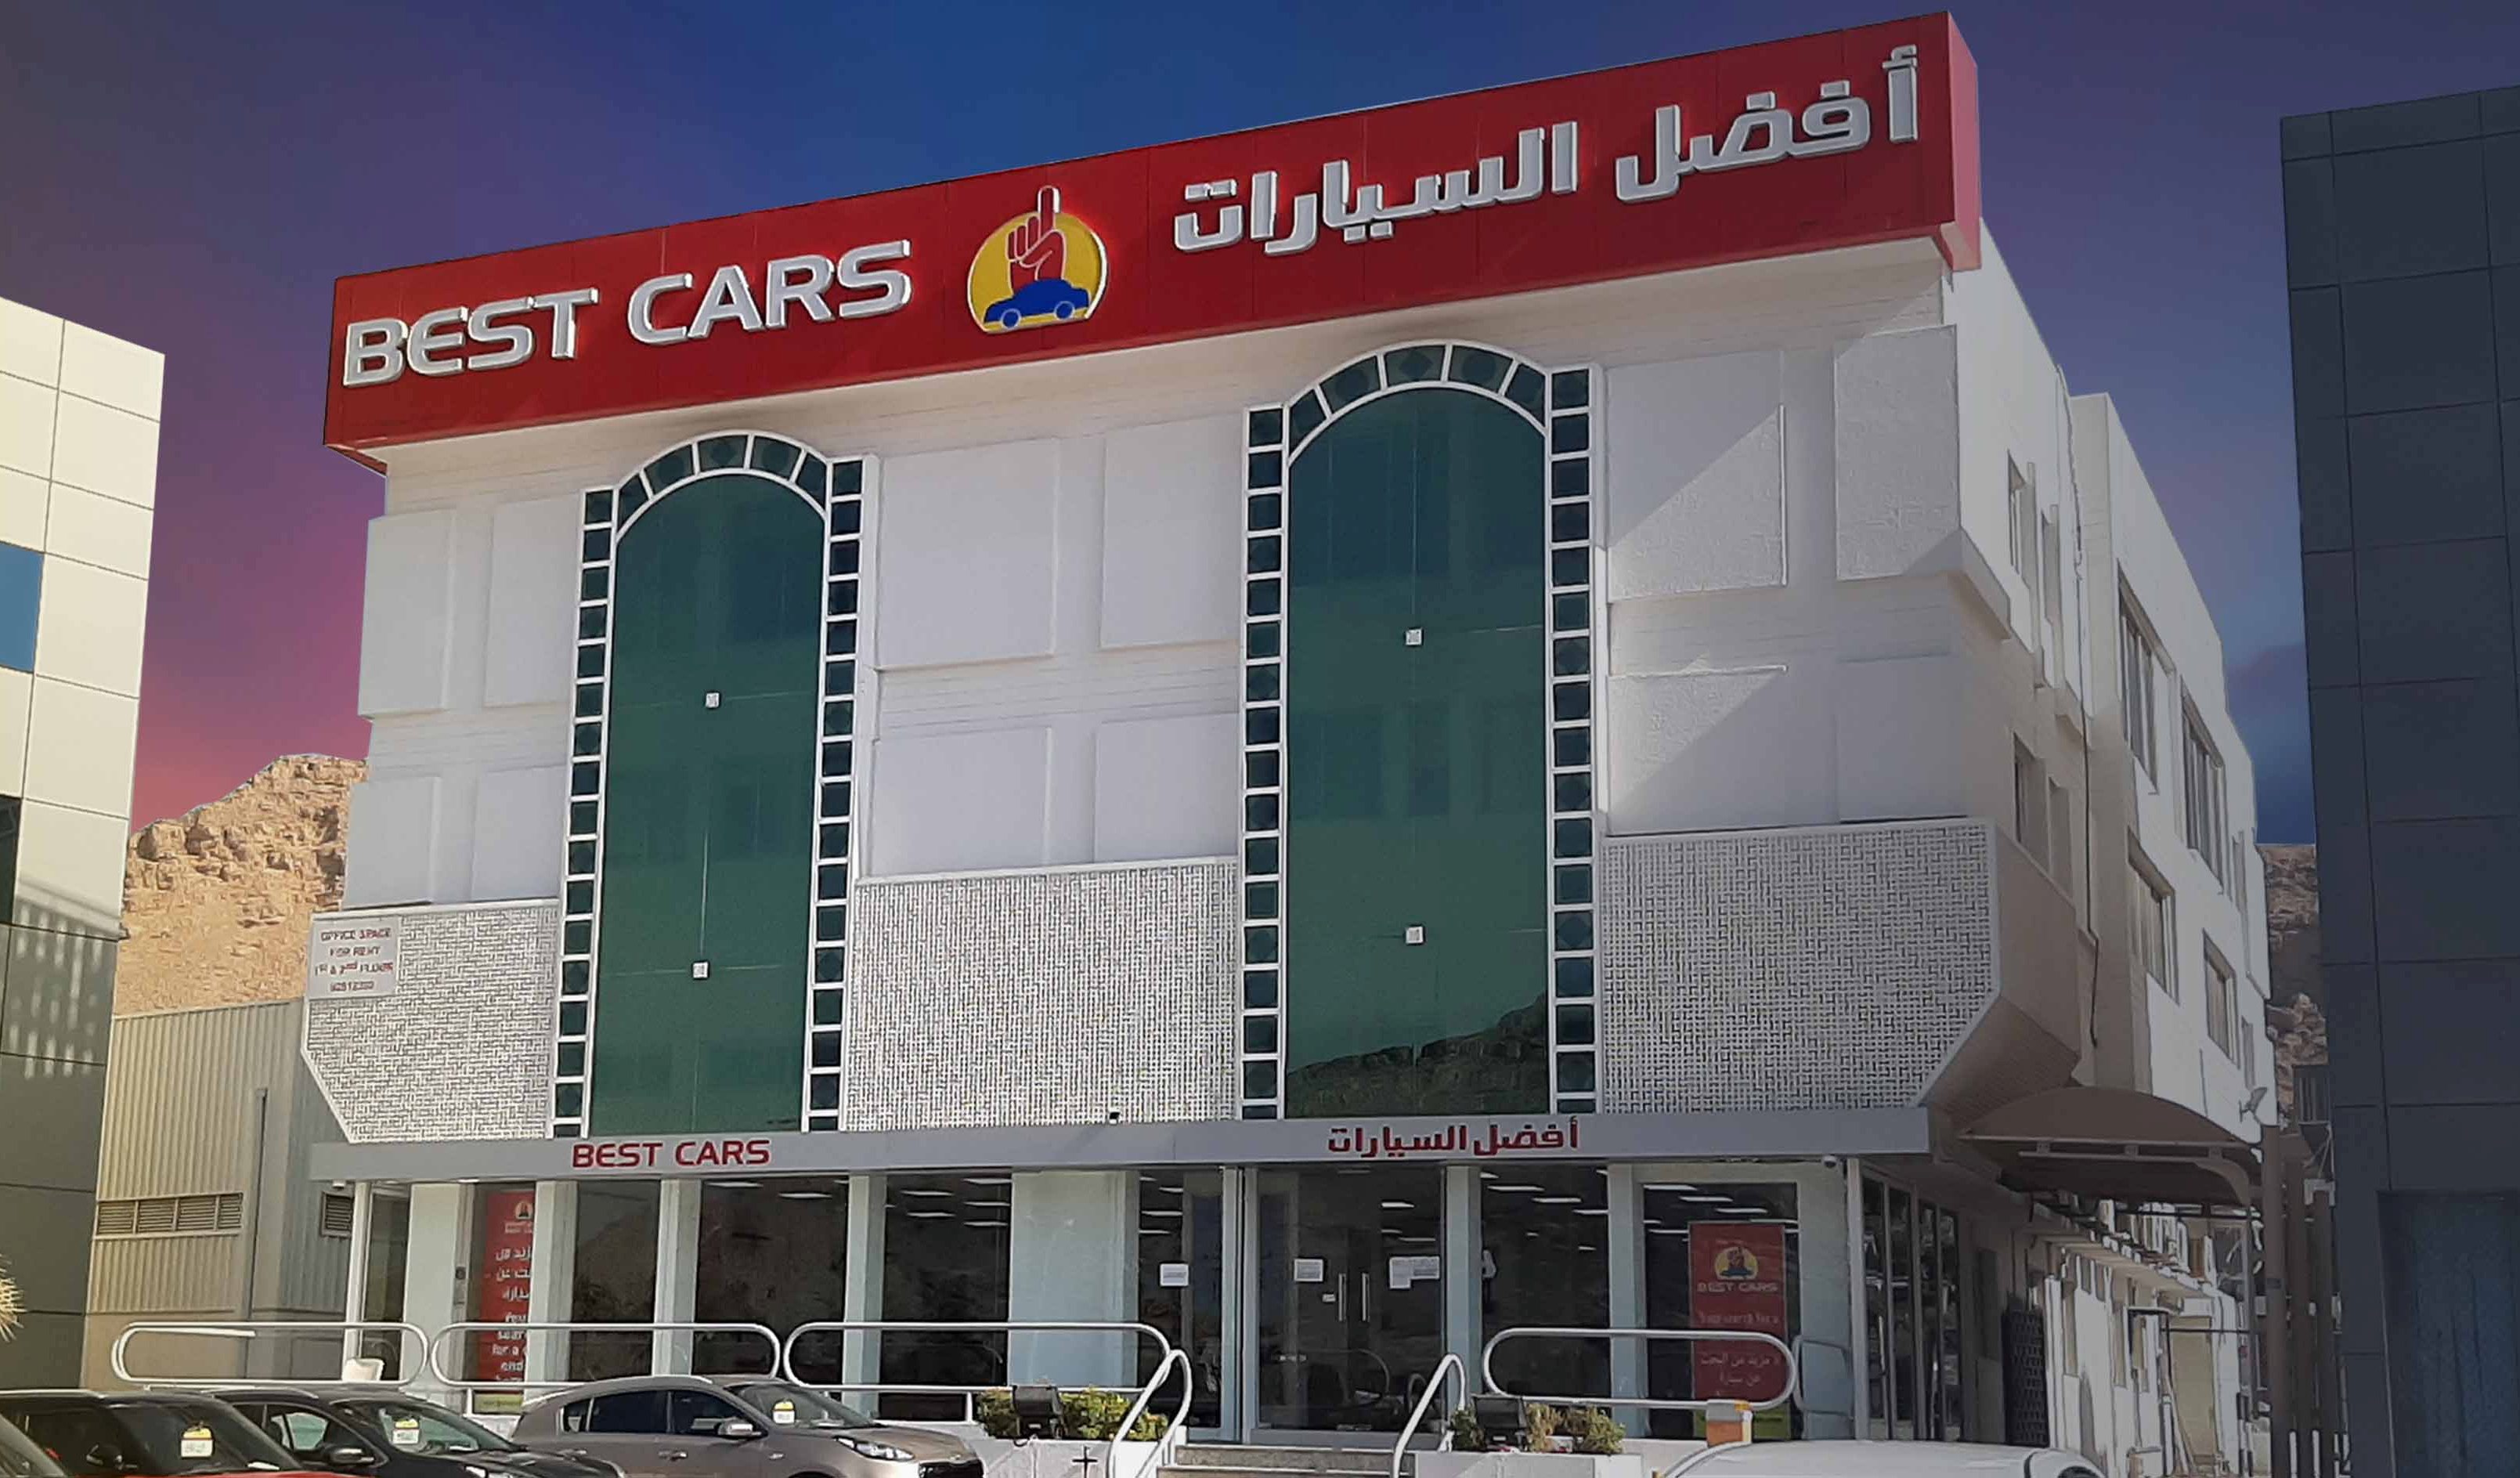 Saud Bahwan's Best car showroom